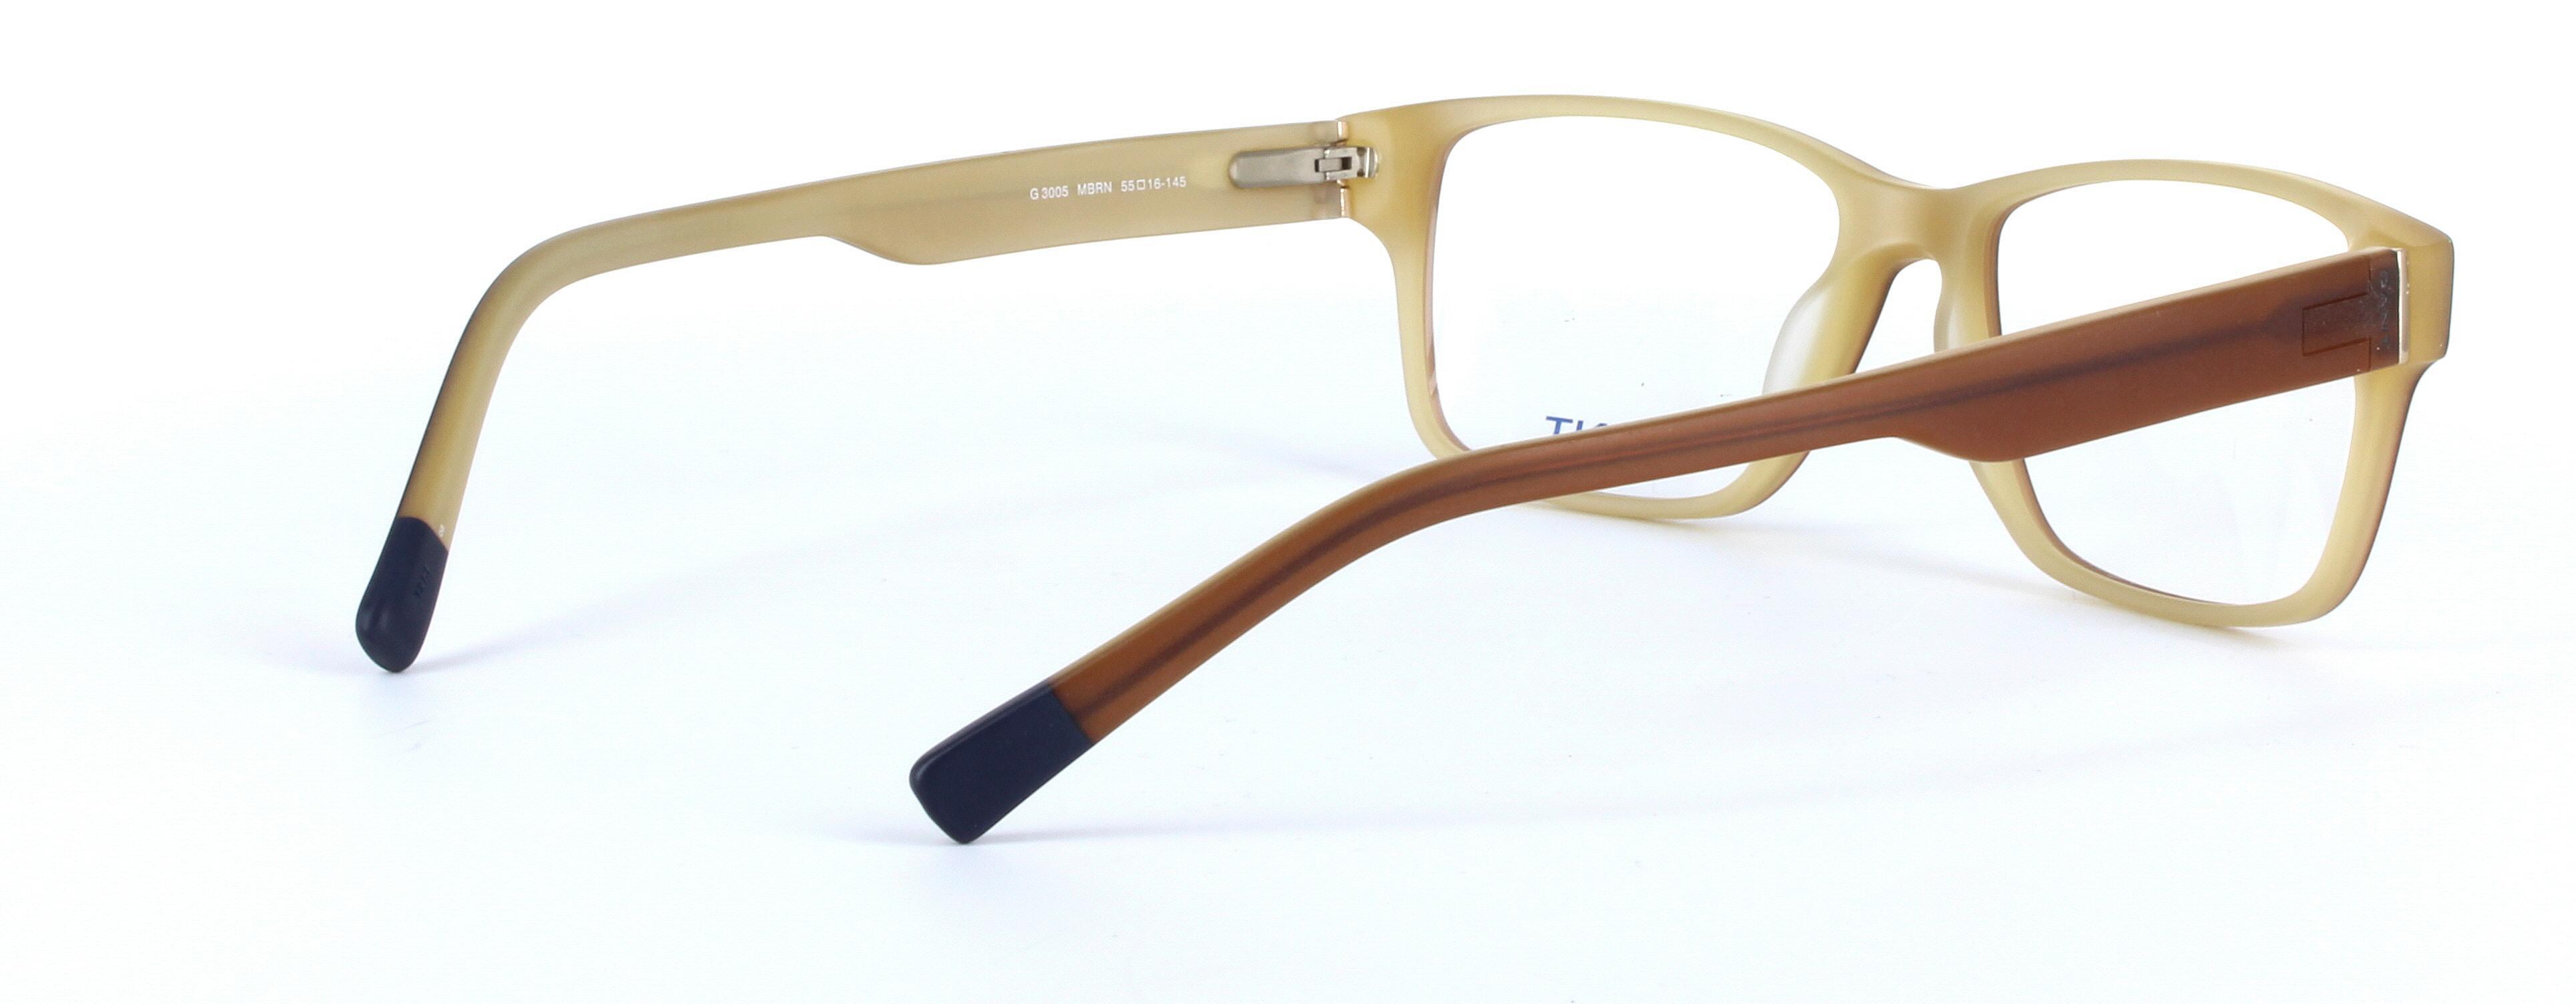 GANT (G3005) Brown Full Rim Rectangular Acetate Glasses - Image View 4